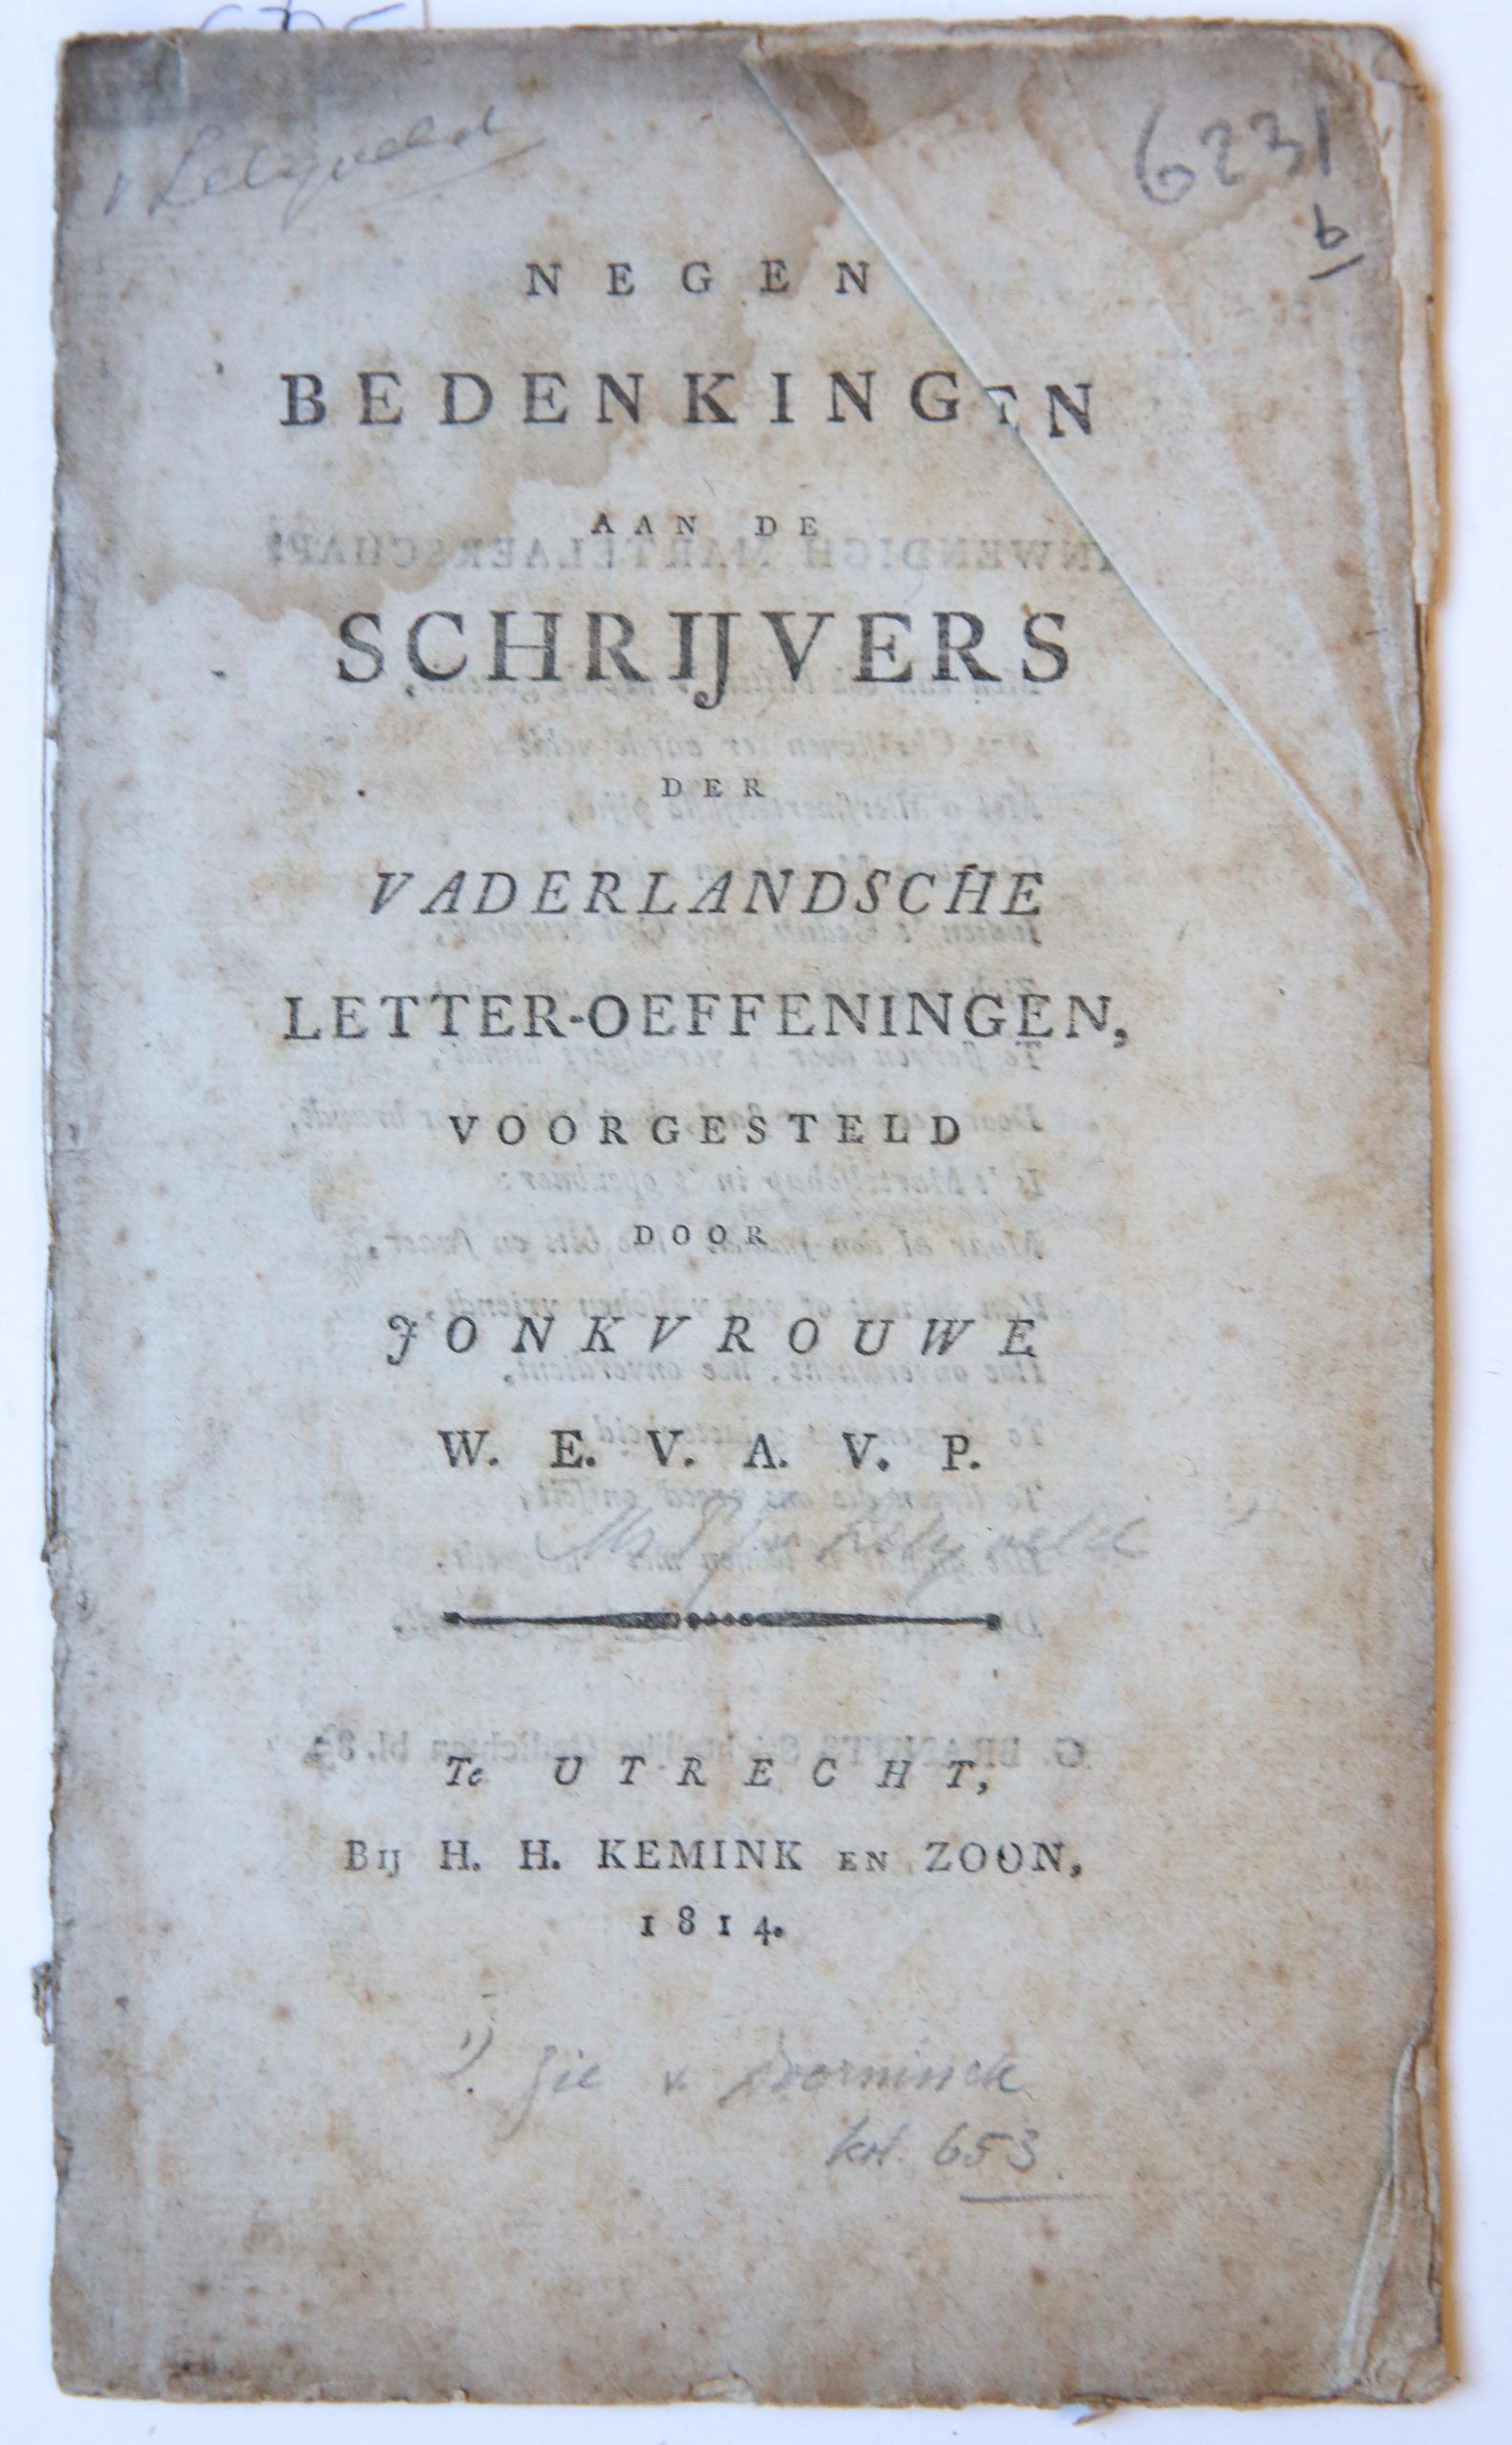 Negen bedenkingen aan de schrijvers der Vaderlandsche Letter-oeffeningen voorgesteld door Jonkvrouwe W.E.V.A.V.P., Utrecht: H.H. Kemink en zoon 1814, 23 pp.